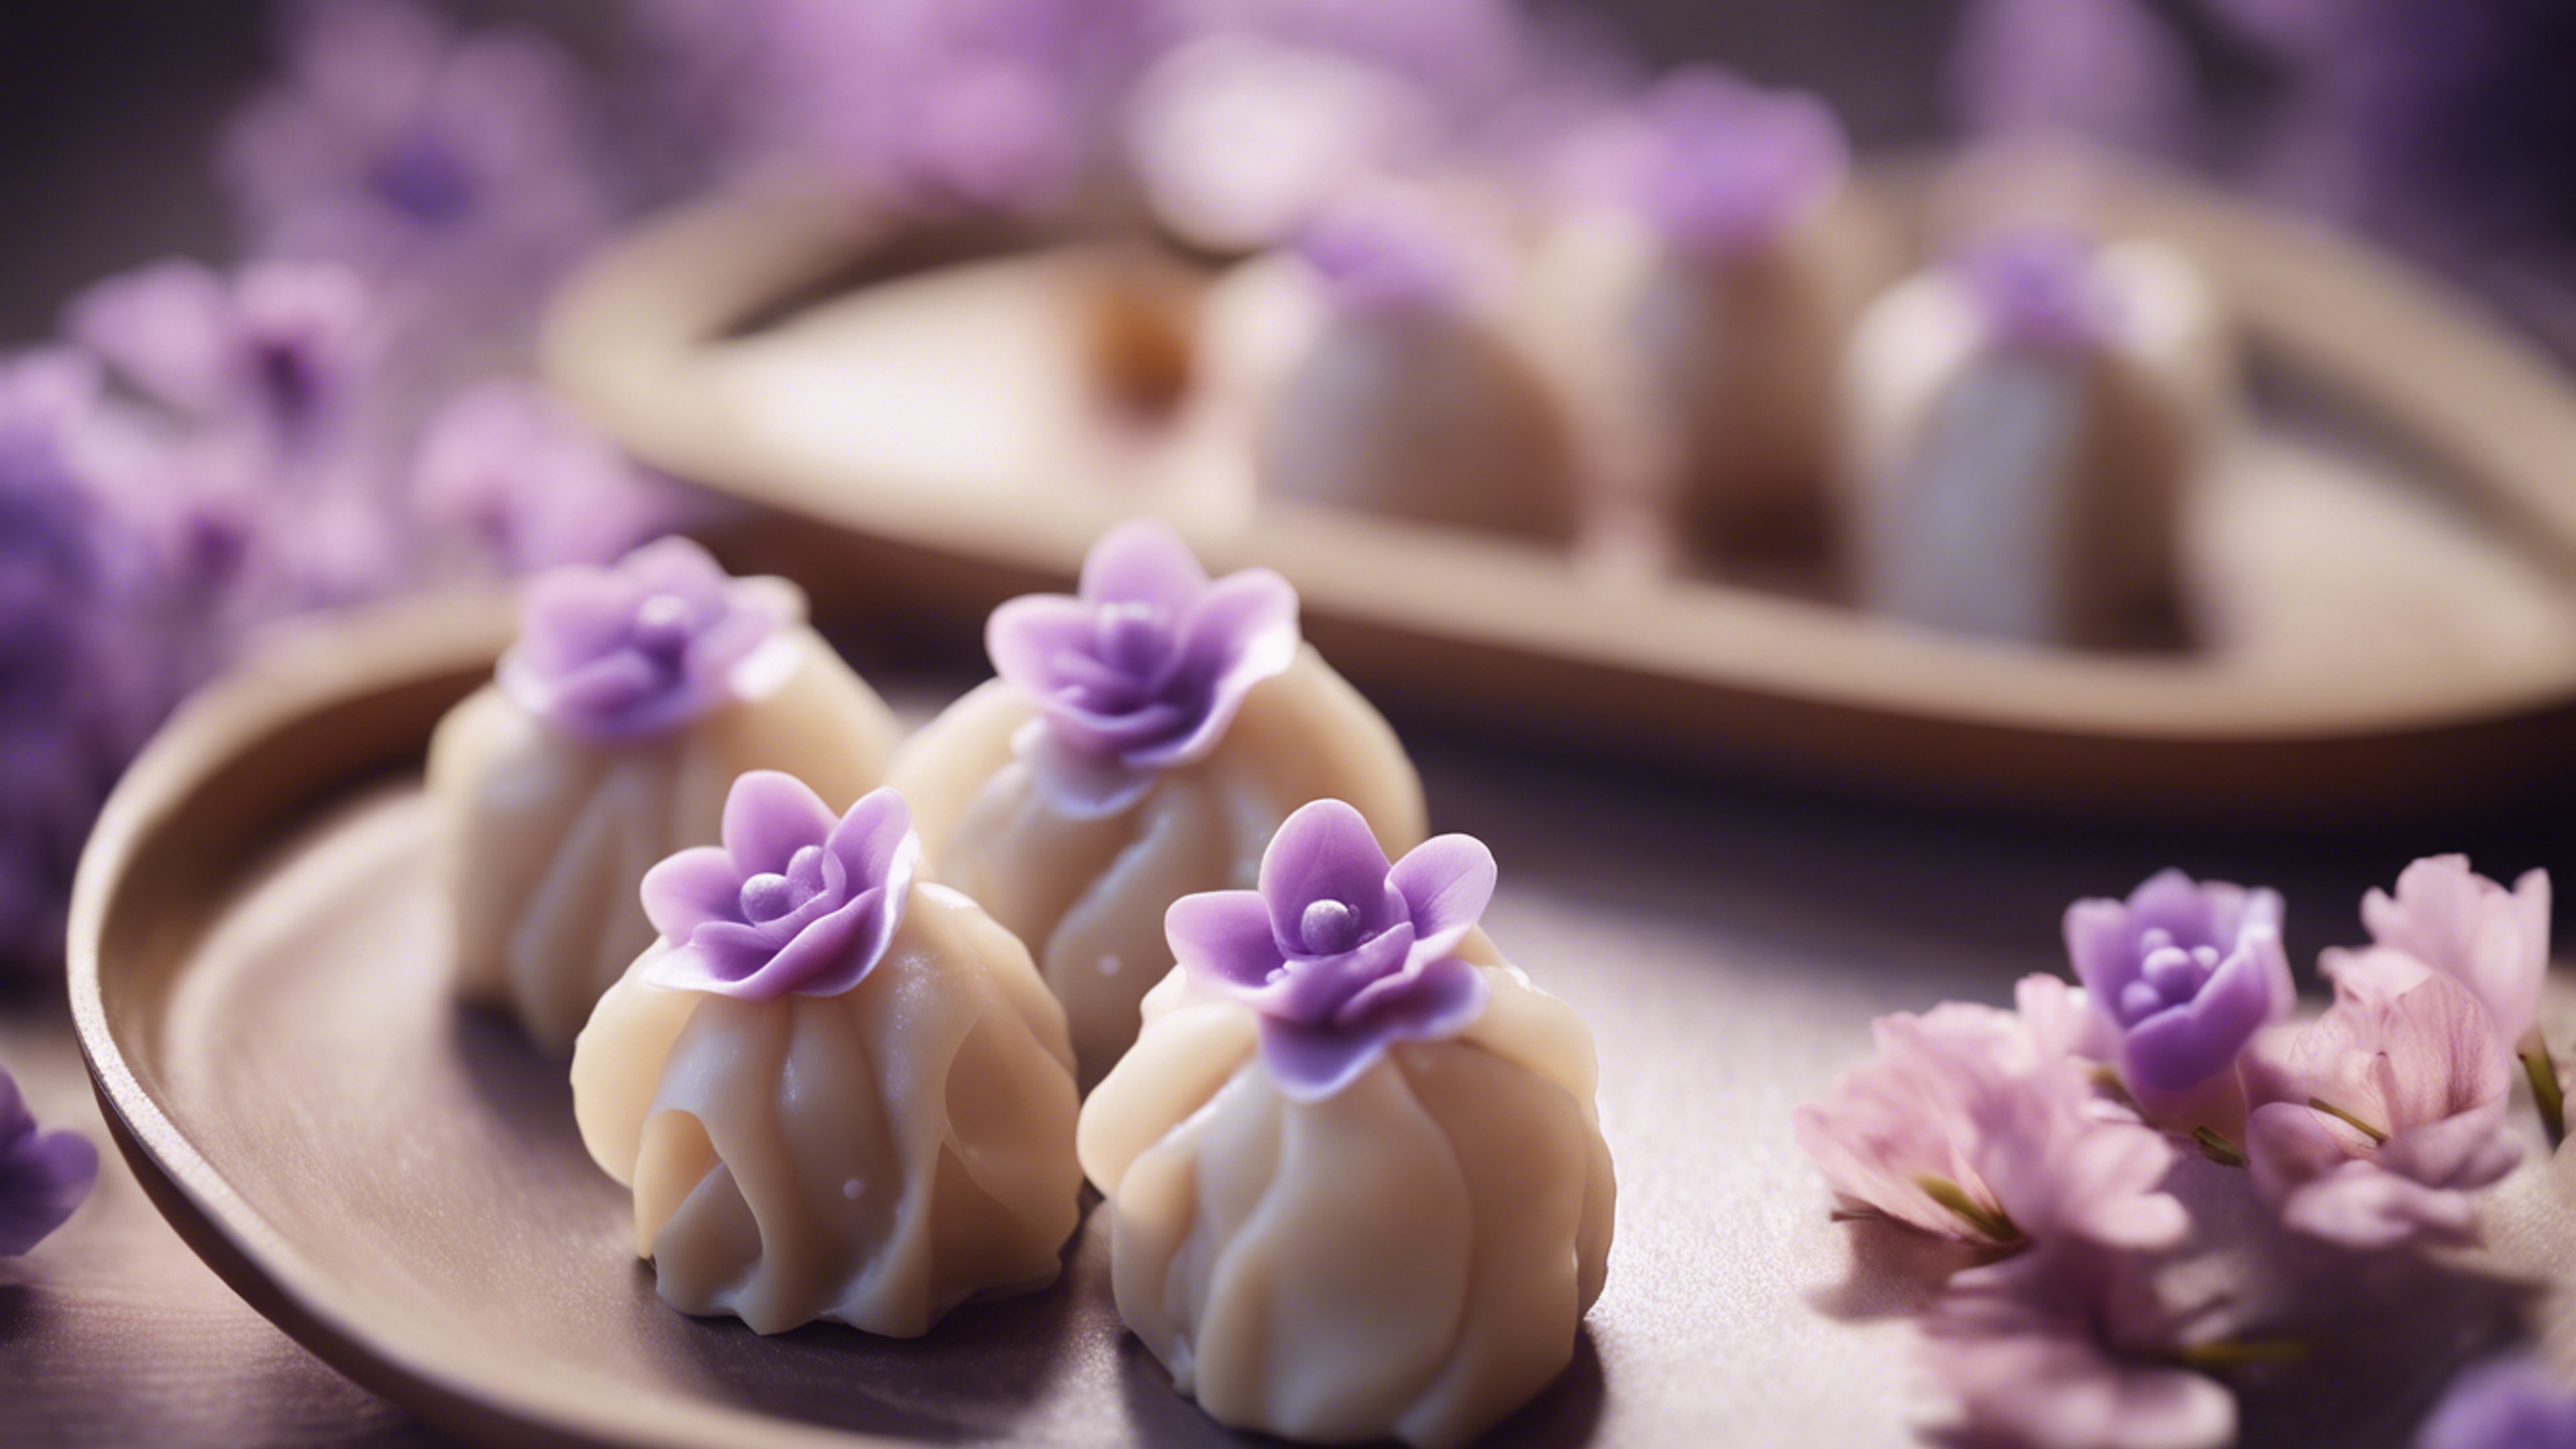 A kawaii styled dim sum dish, with delicate and light purple dumplings shaped like flowers. Hình nền[29e111c9b013403690b4]